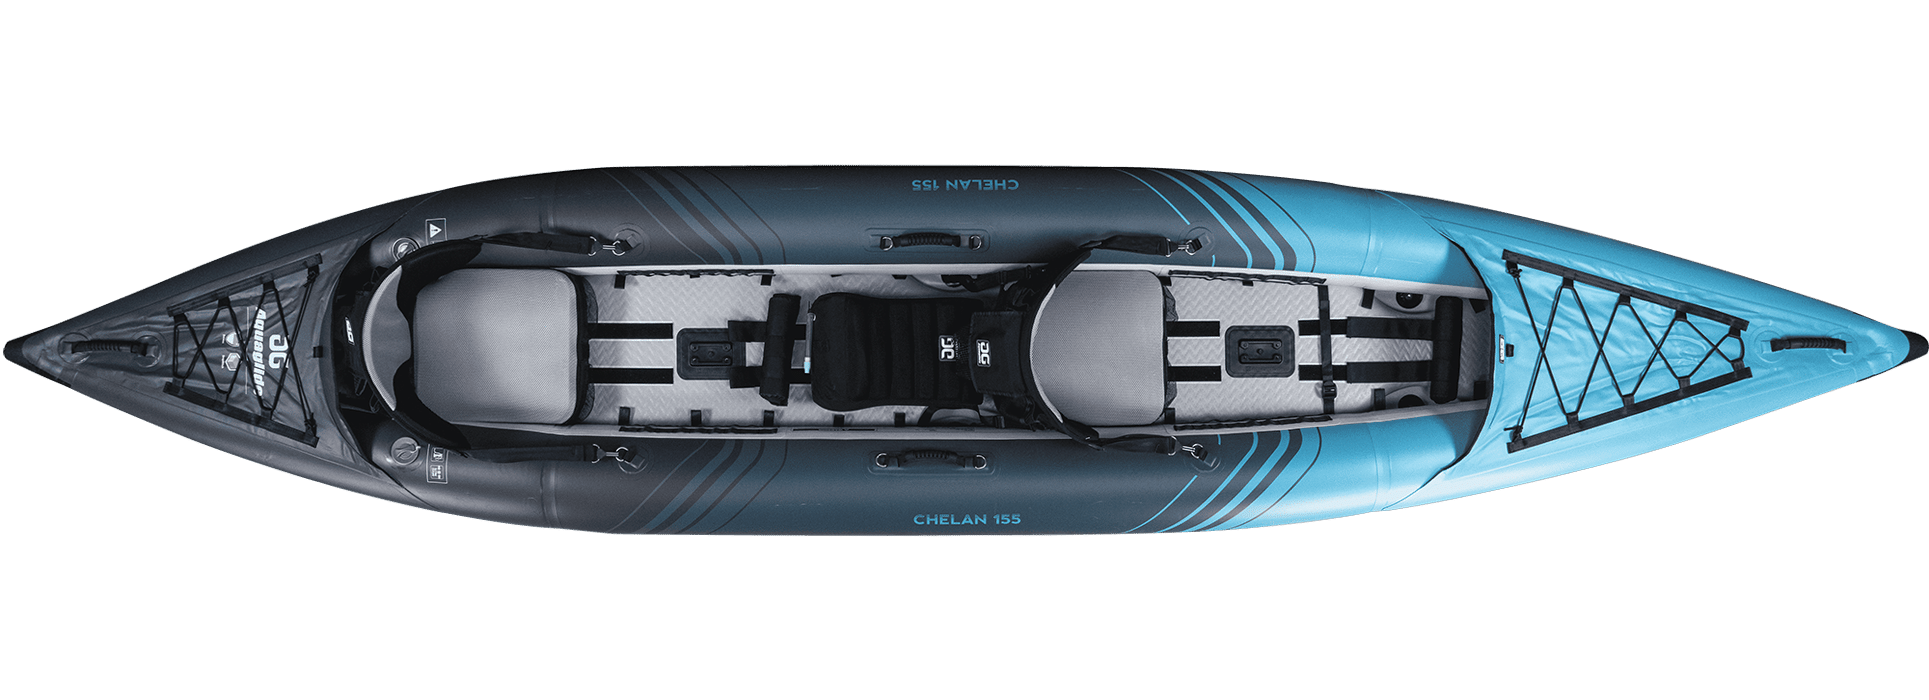 Chelan 155 Inflatable Tandem Kayak